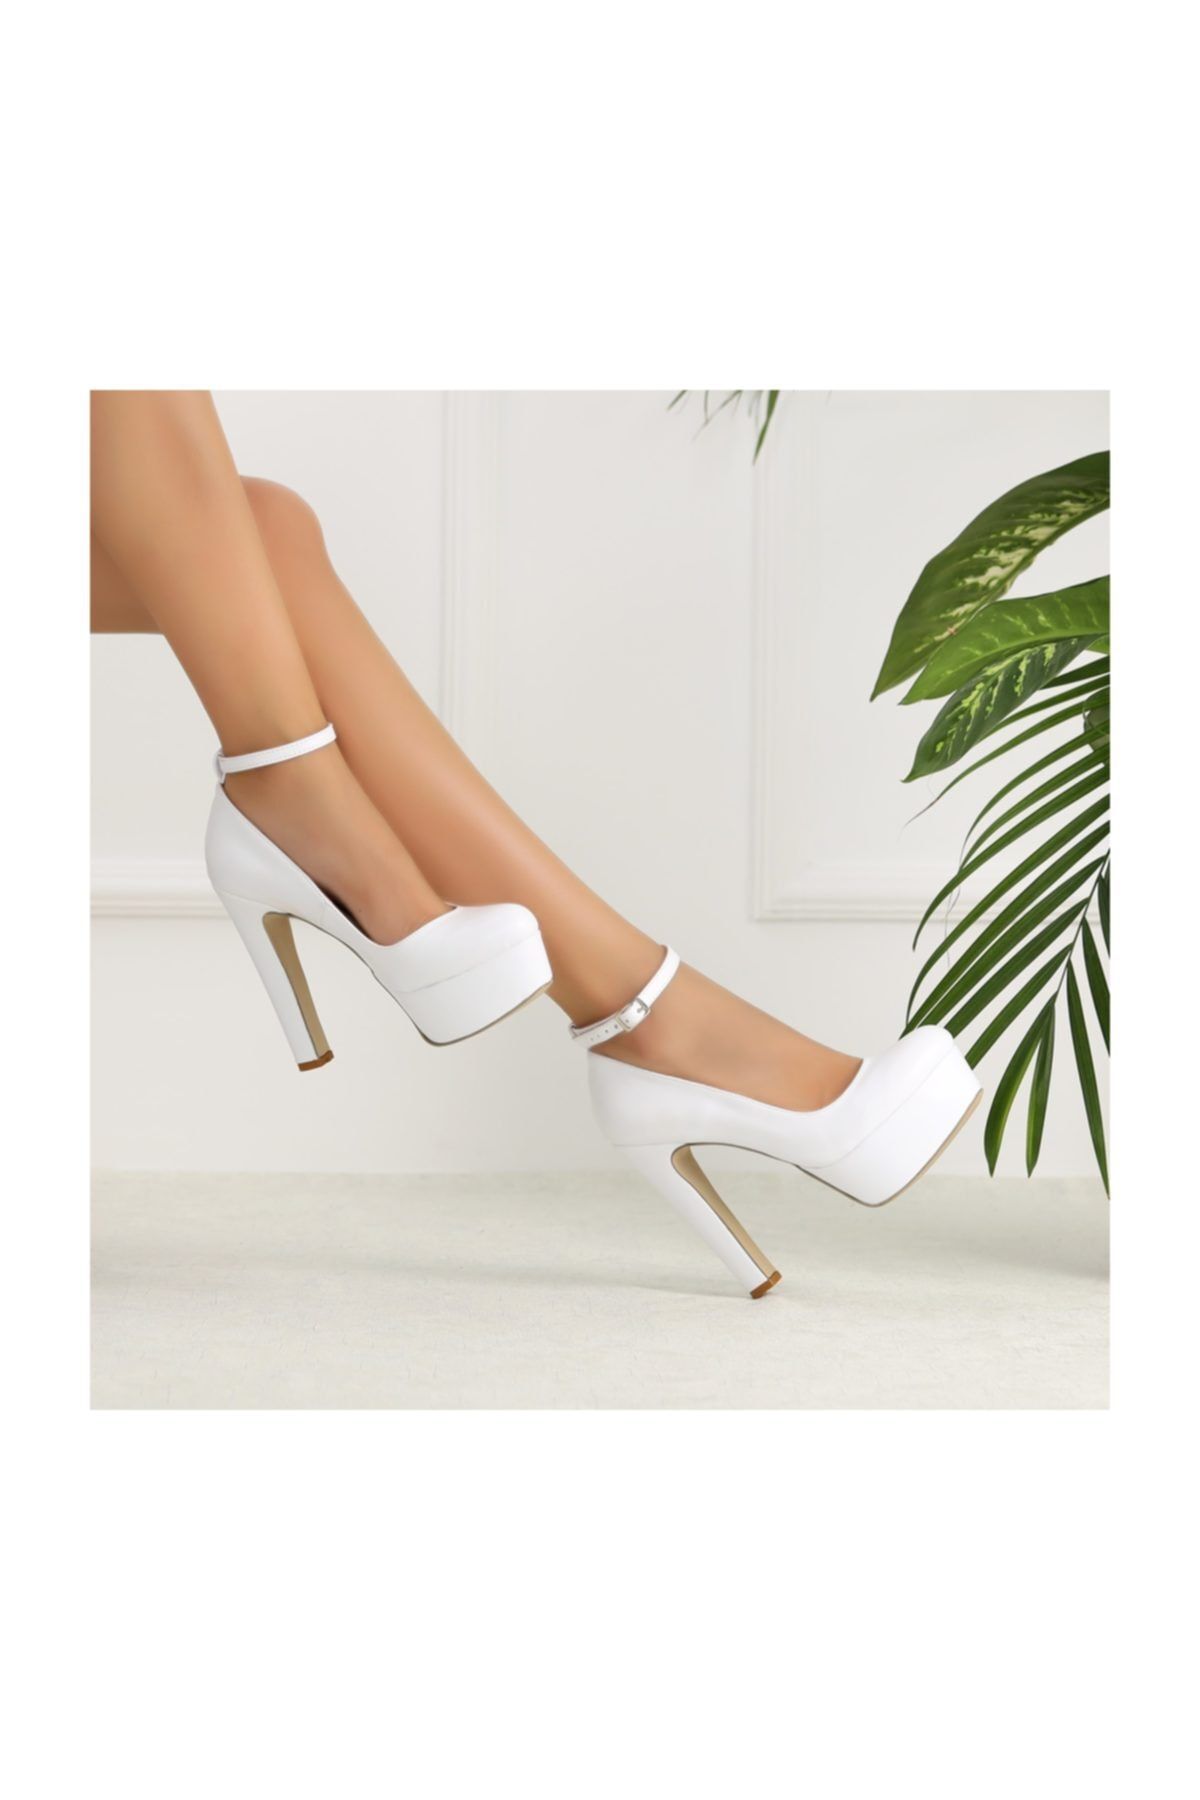 sothe shoes Kadın Platform Kalın Topuklu Ayakkabı